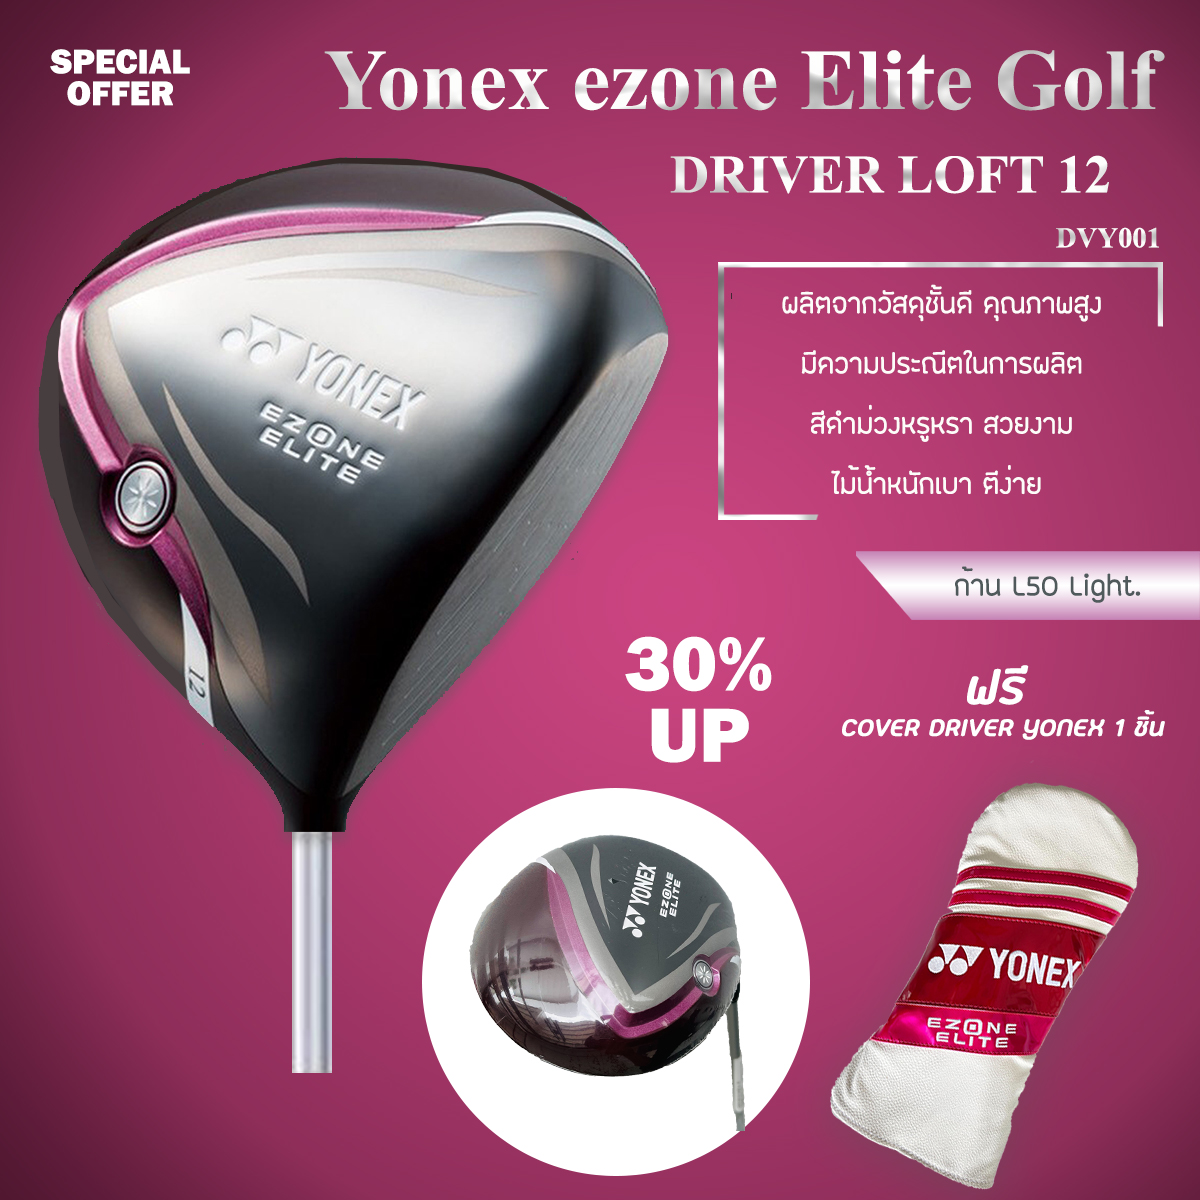 ไม้กอล์ฟ DRIVER สำหรับสุภาพสตรี LOFT 12 YN ezone Elite Golf:  12 -ก้าน L50 Light. ฟรีปลอกหุ้มไม้กอล์ฟสีม่วงขาว สุดสวย (DVY001)